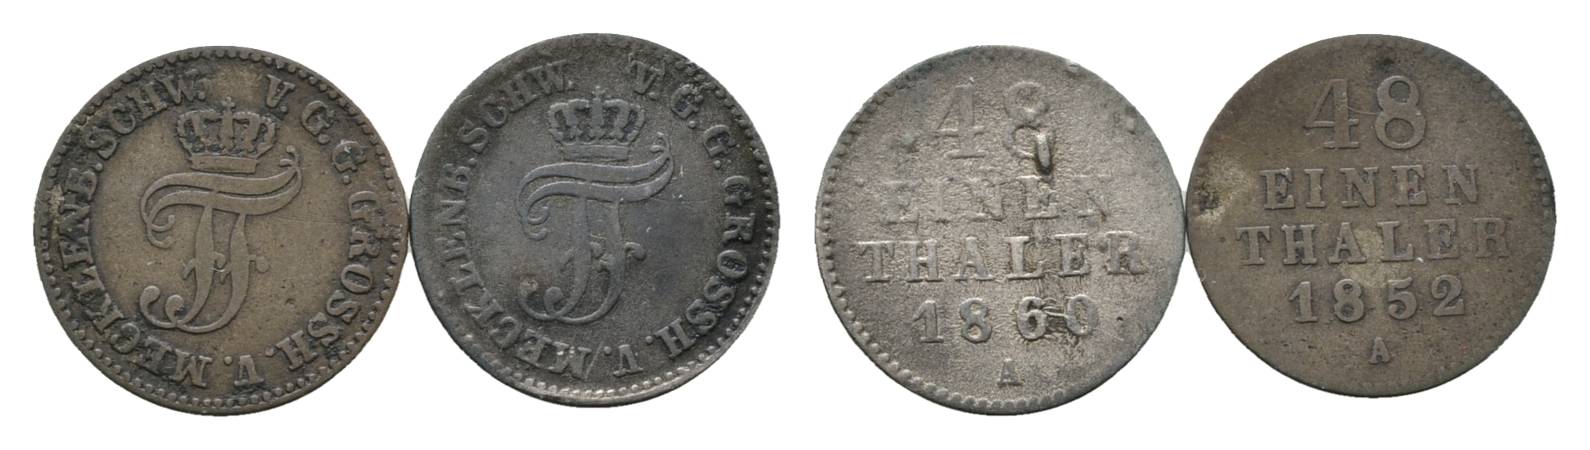  Mecklenburg, 2 Kleinmünzen (1860/1852)   